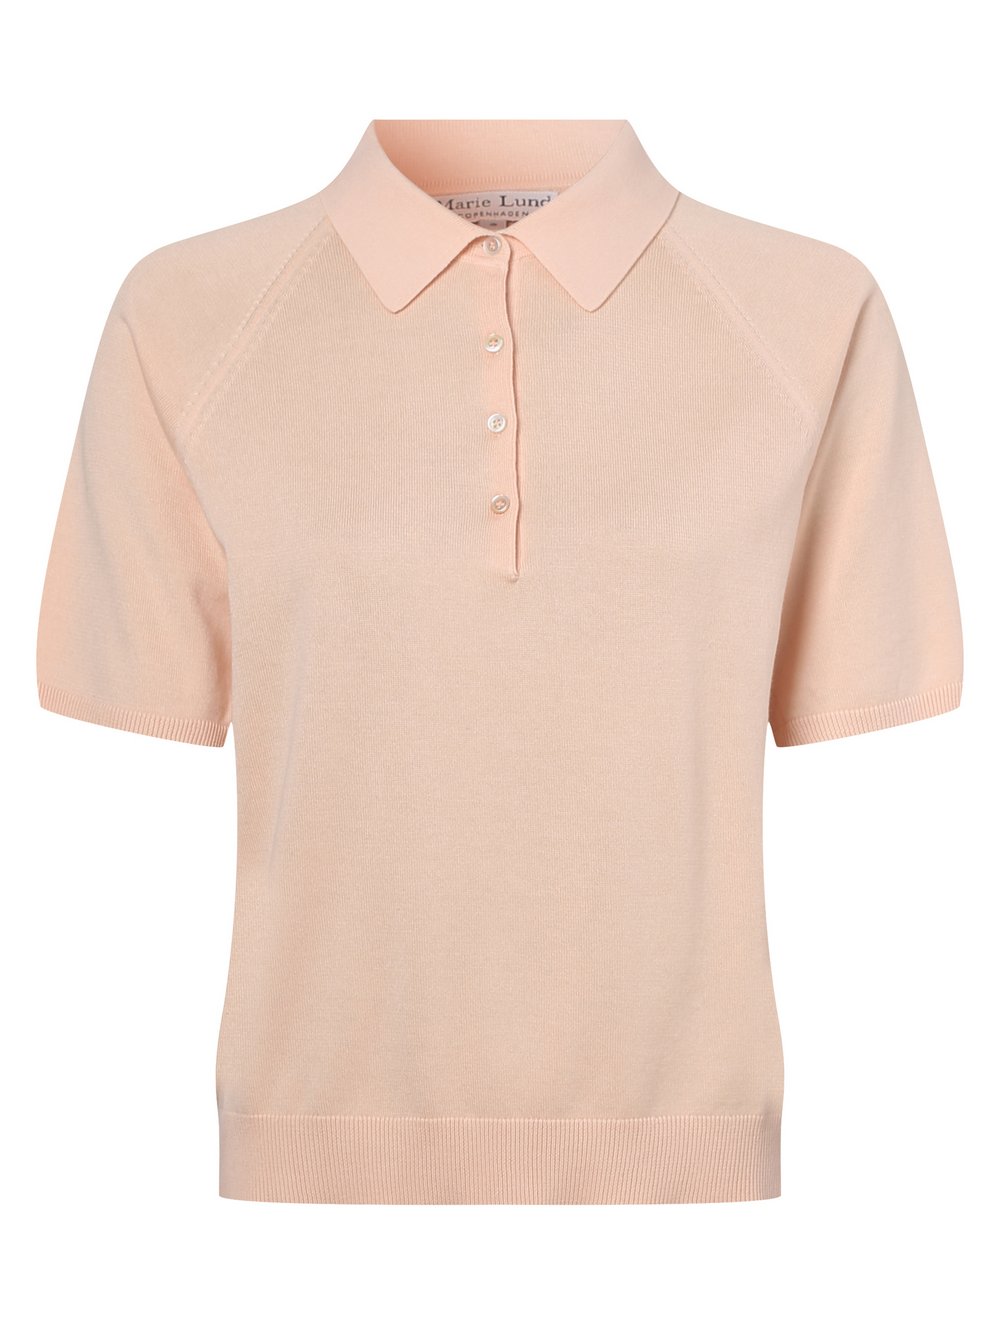 Marie Lund - Damska koszulka polo, pomarańczowy|różowy